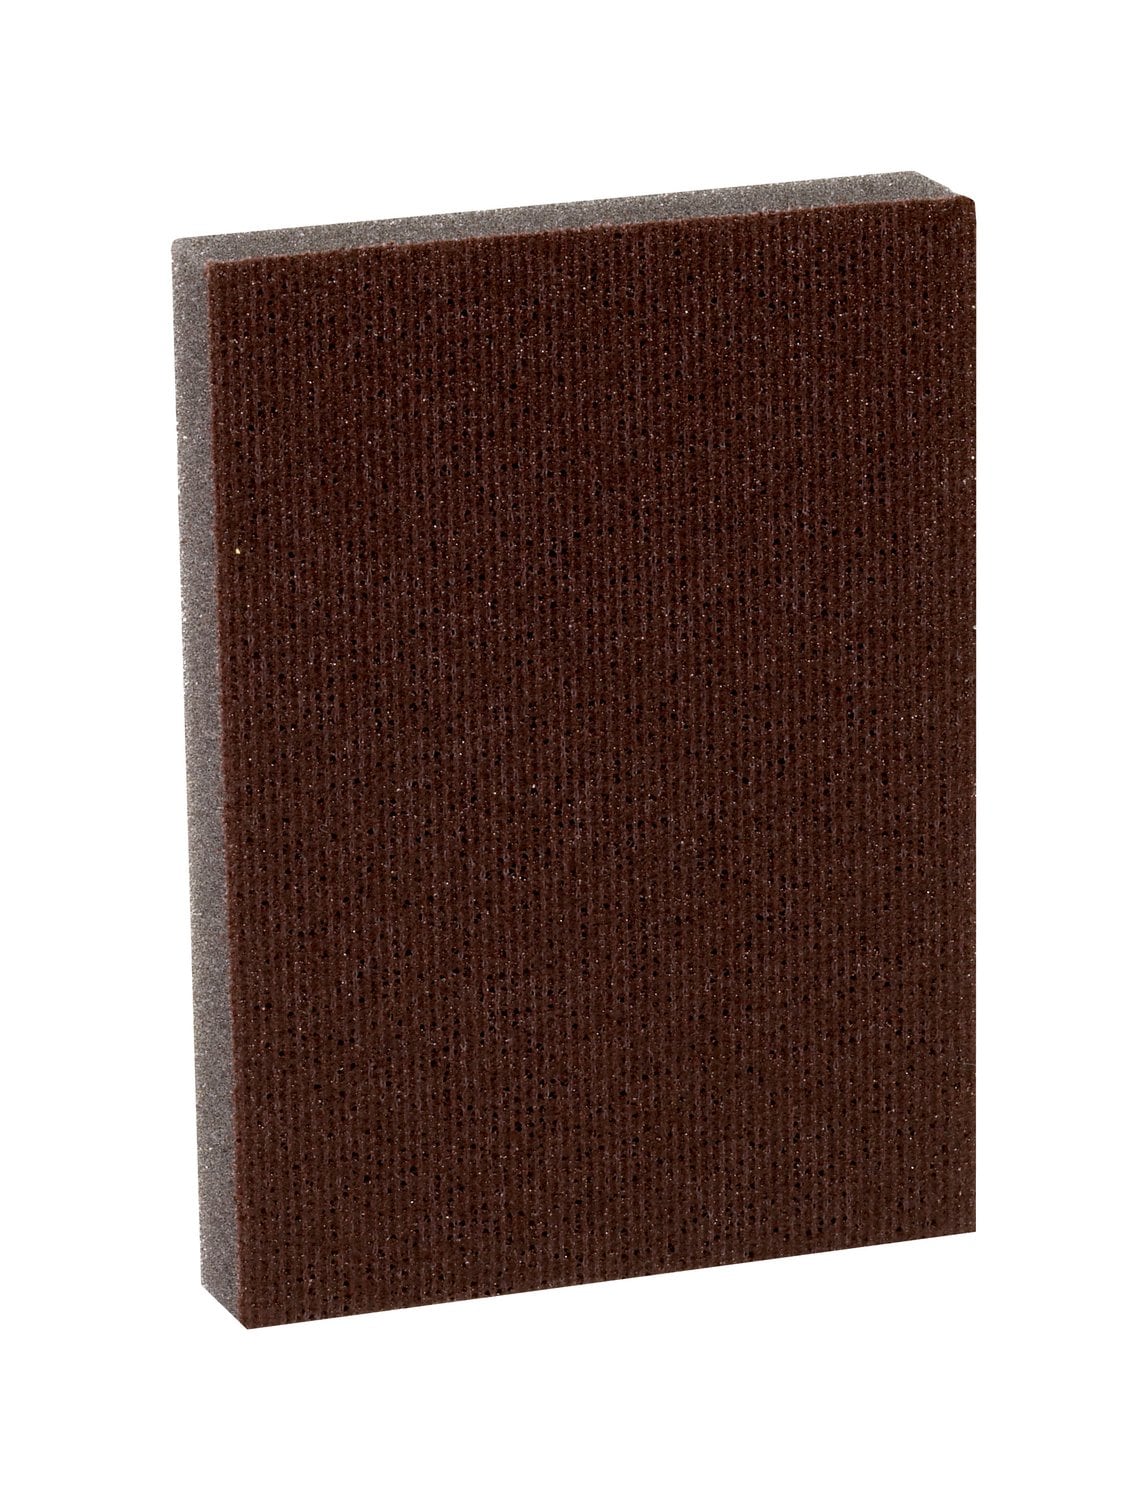 7010377002 - 3M Pro-Pad Sanding Sponge, PRPD-100, 2.88 in x 4 in x .5 in, 100 Grit,
54/cs